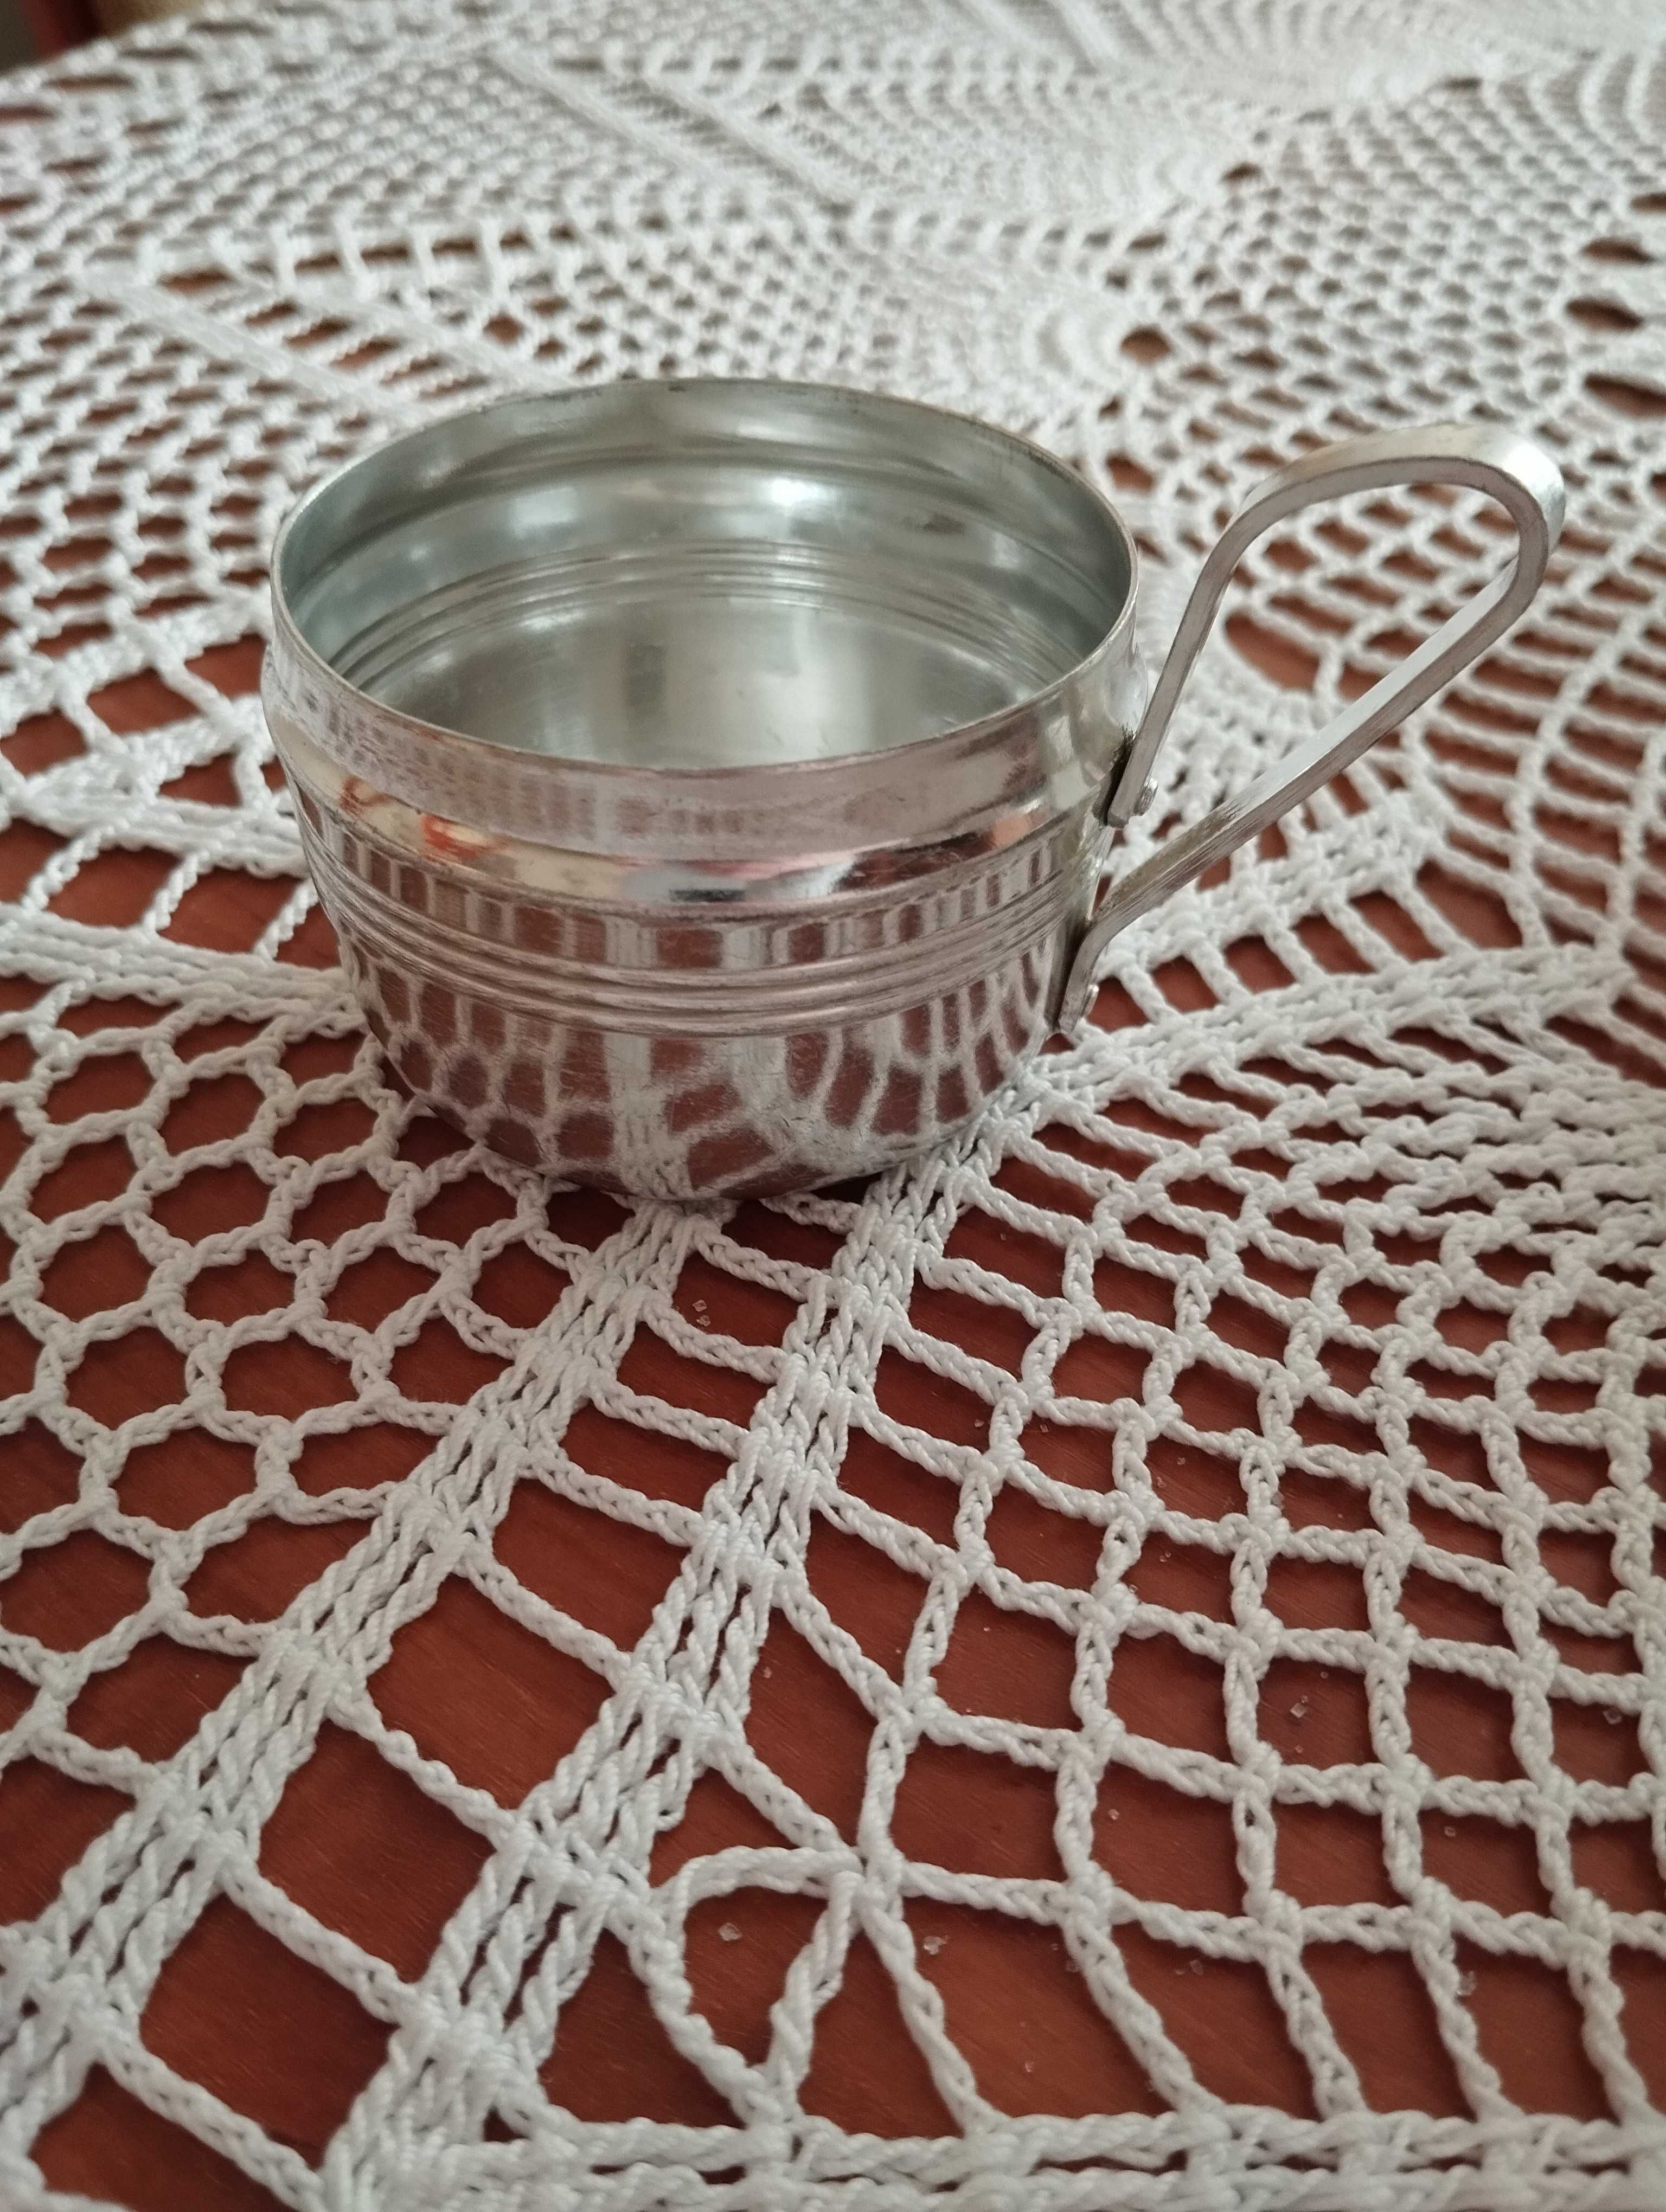 Aluminiowe koszyczki do szklanek + cukiernica w koszyczku